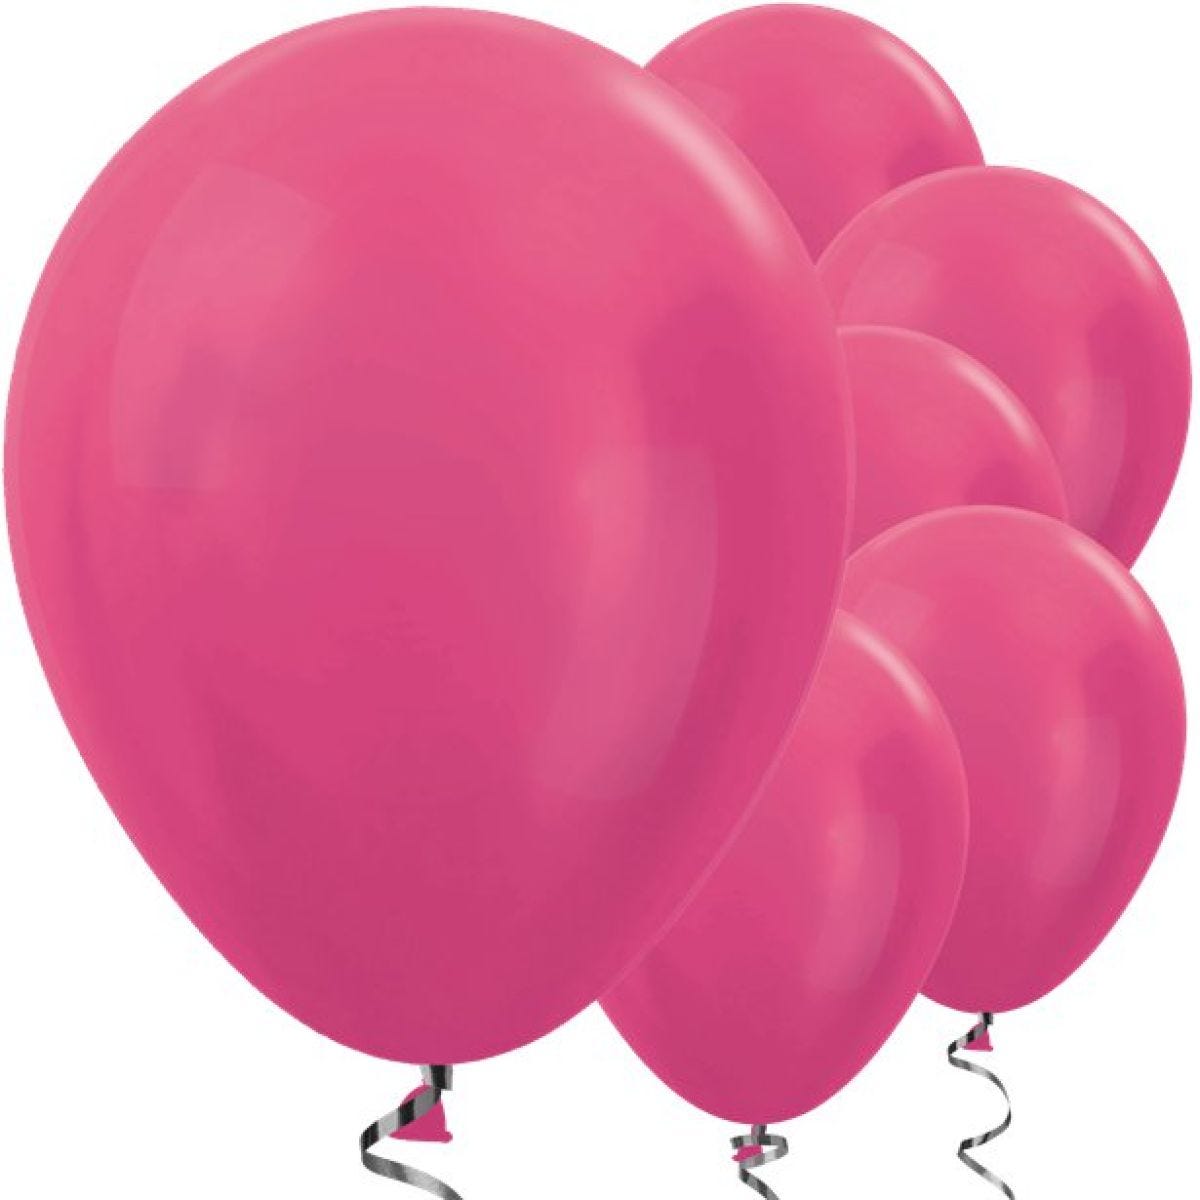 Fuchsia Metallic Balloons - 12" Latex Balloons